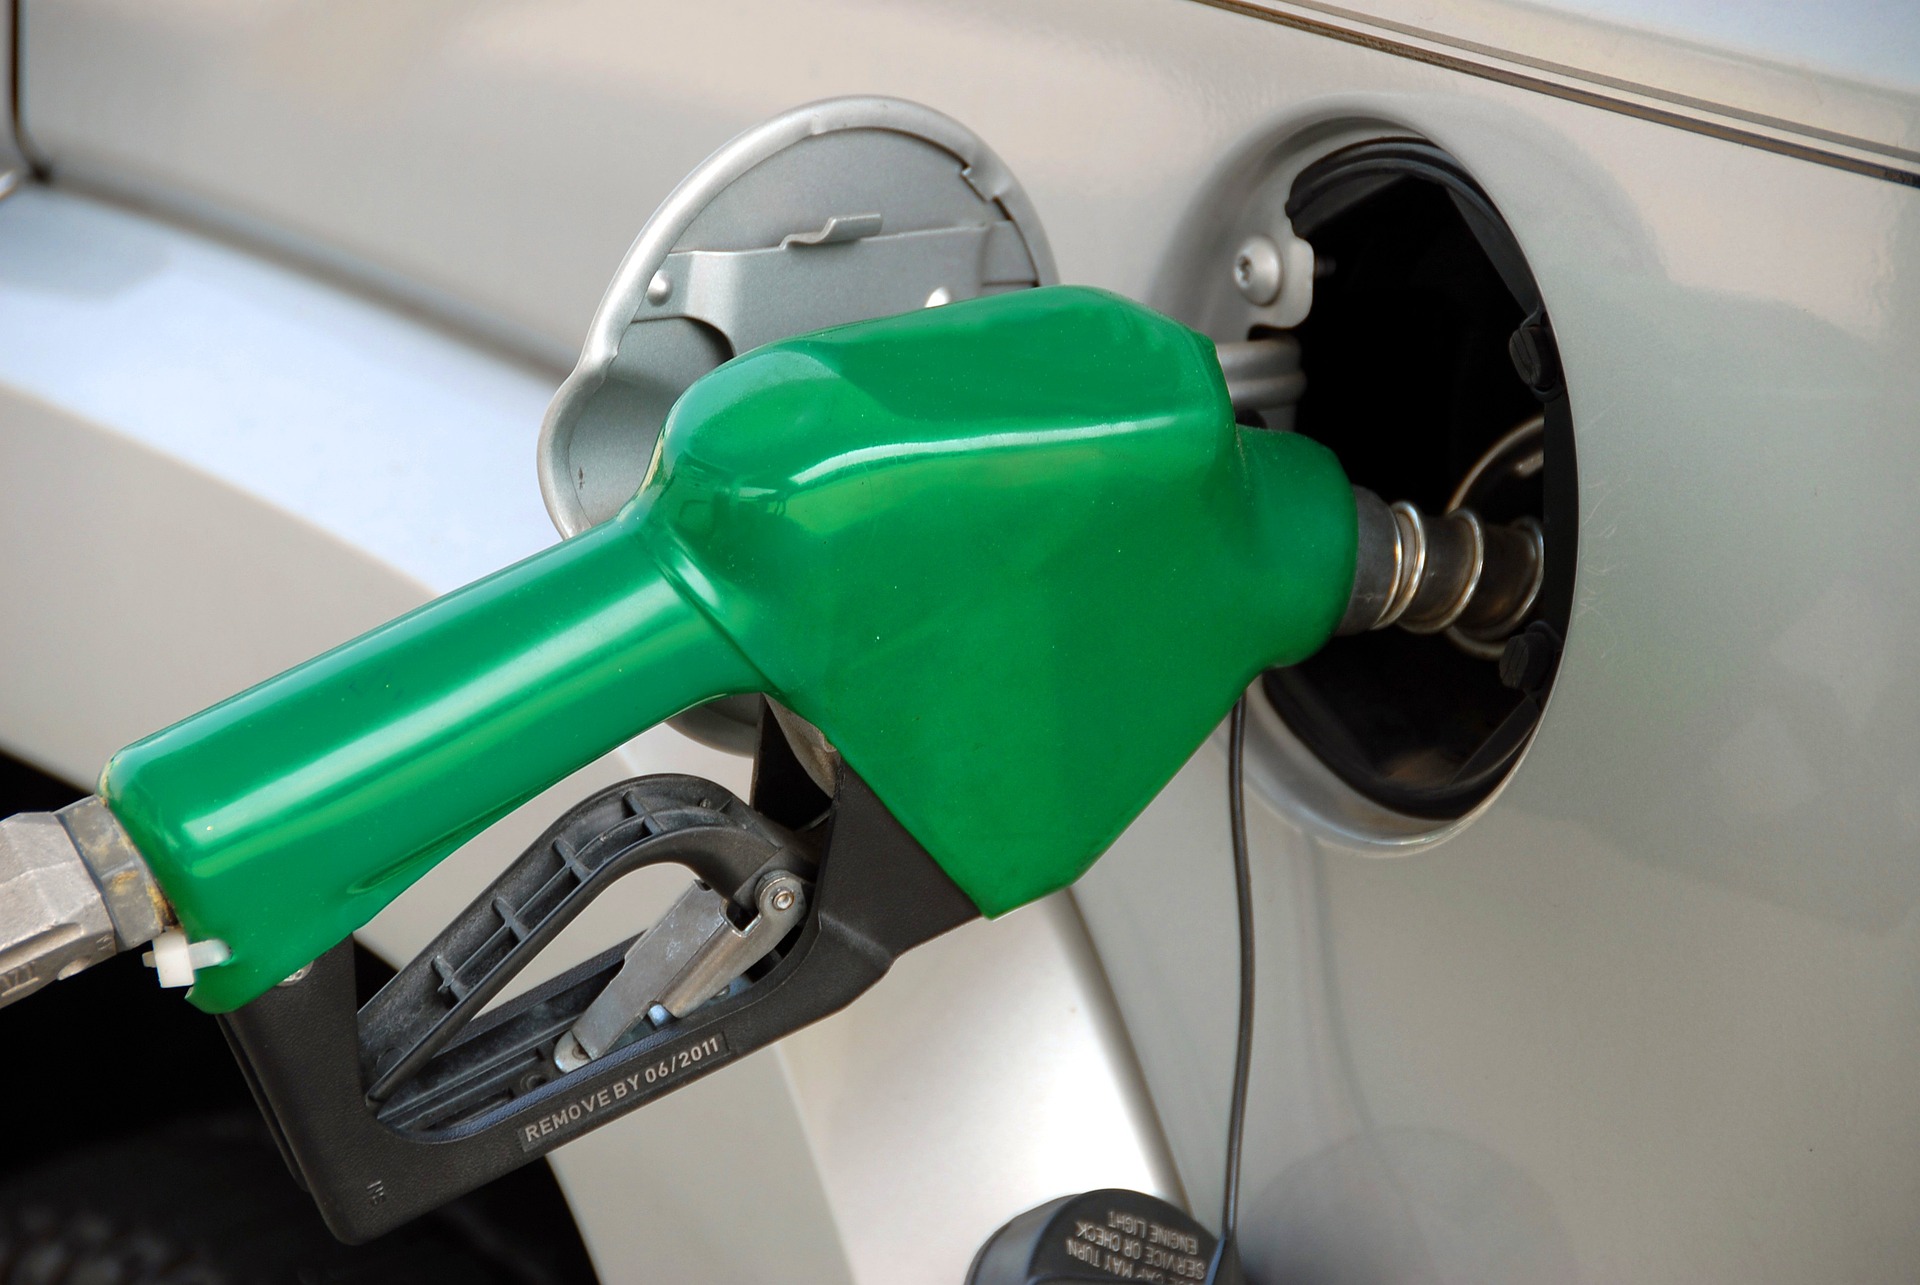 ΠΟΠΕΚ: Με χρονοκαθυστέρηση η αύξηση των τιμών στα πρατήρια καυσίμων